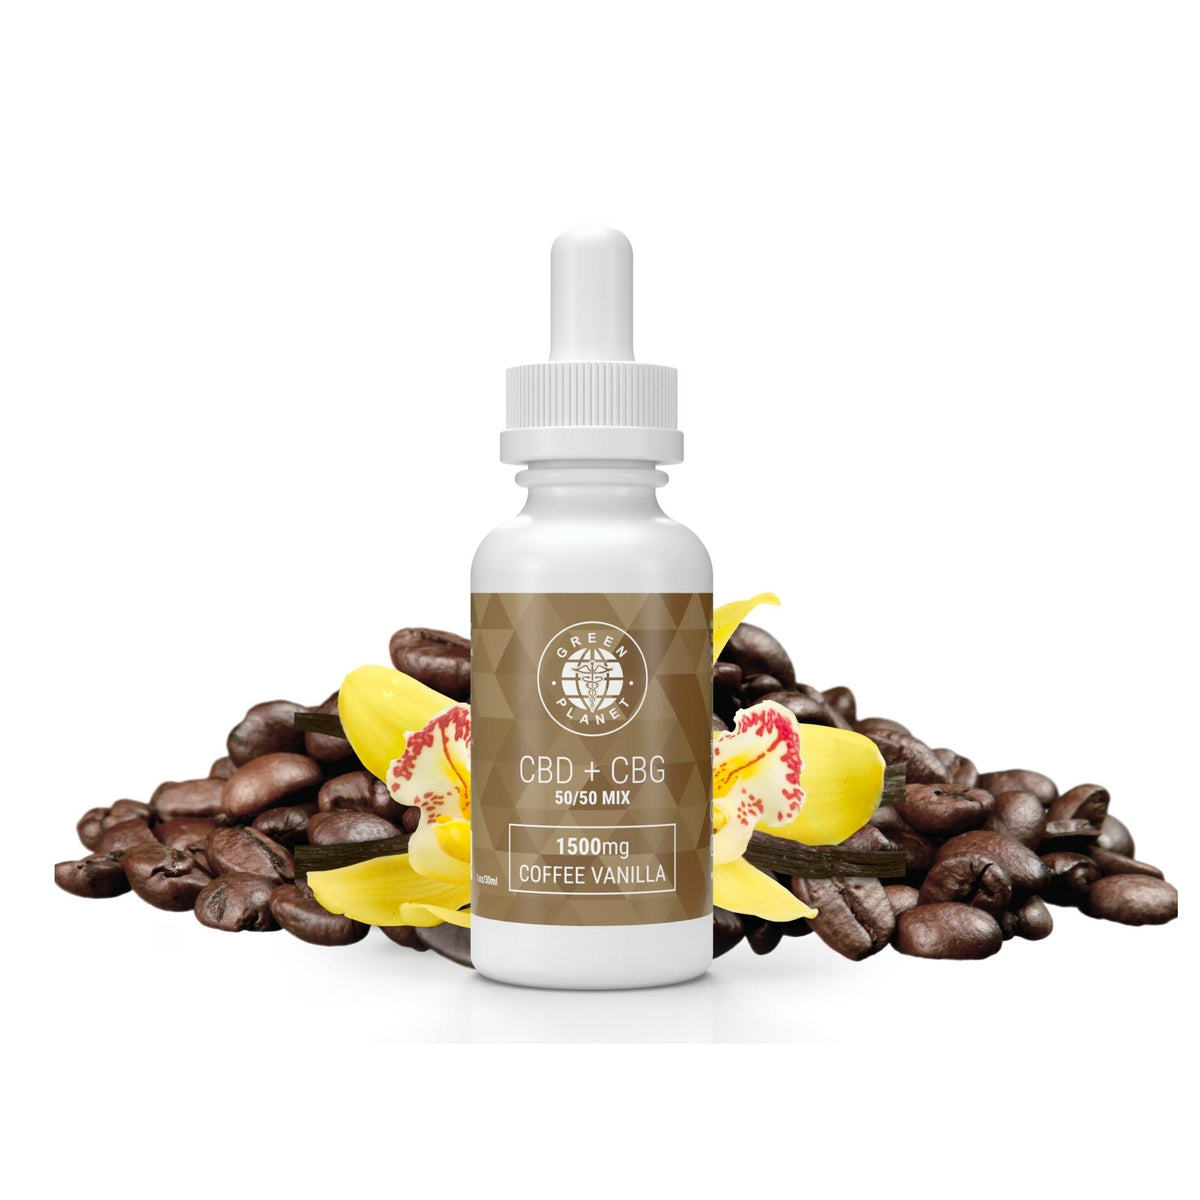 CBD + CBG 750Mg/1500Mg 50/50 Mix Coffee Vanilla Flavor 30ml